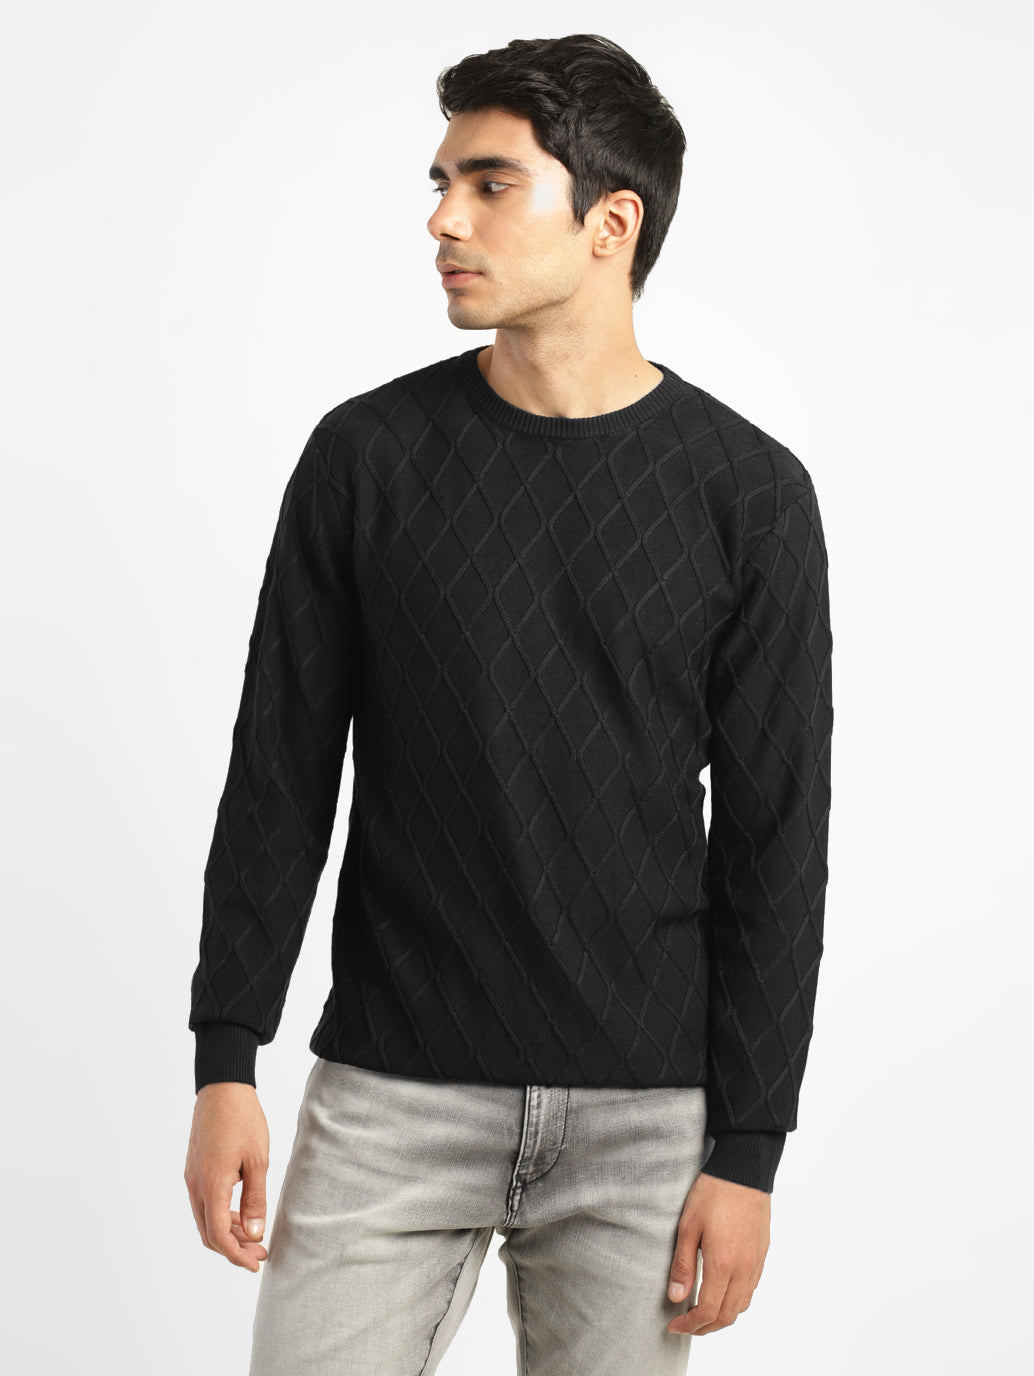 Men's Self Design Black Crew Neck Sweater